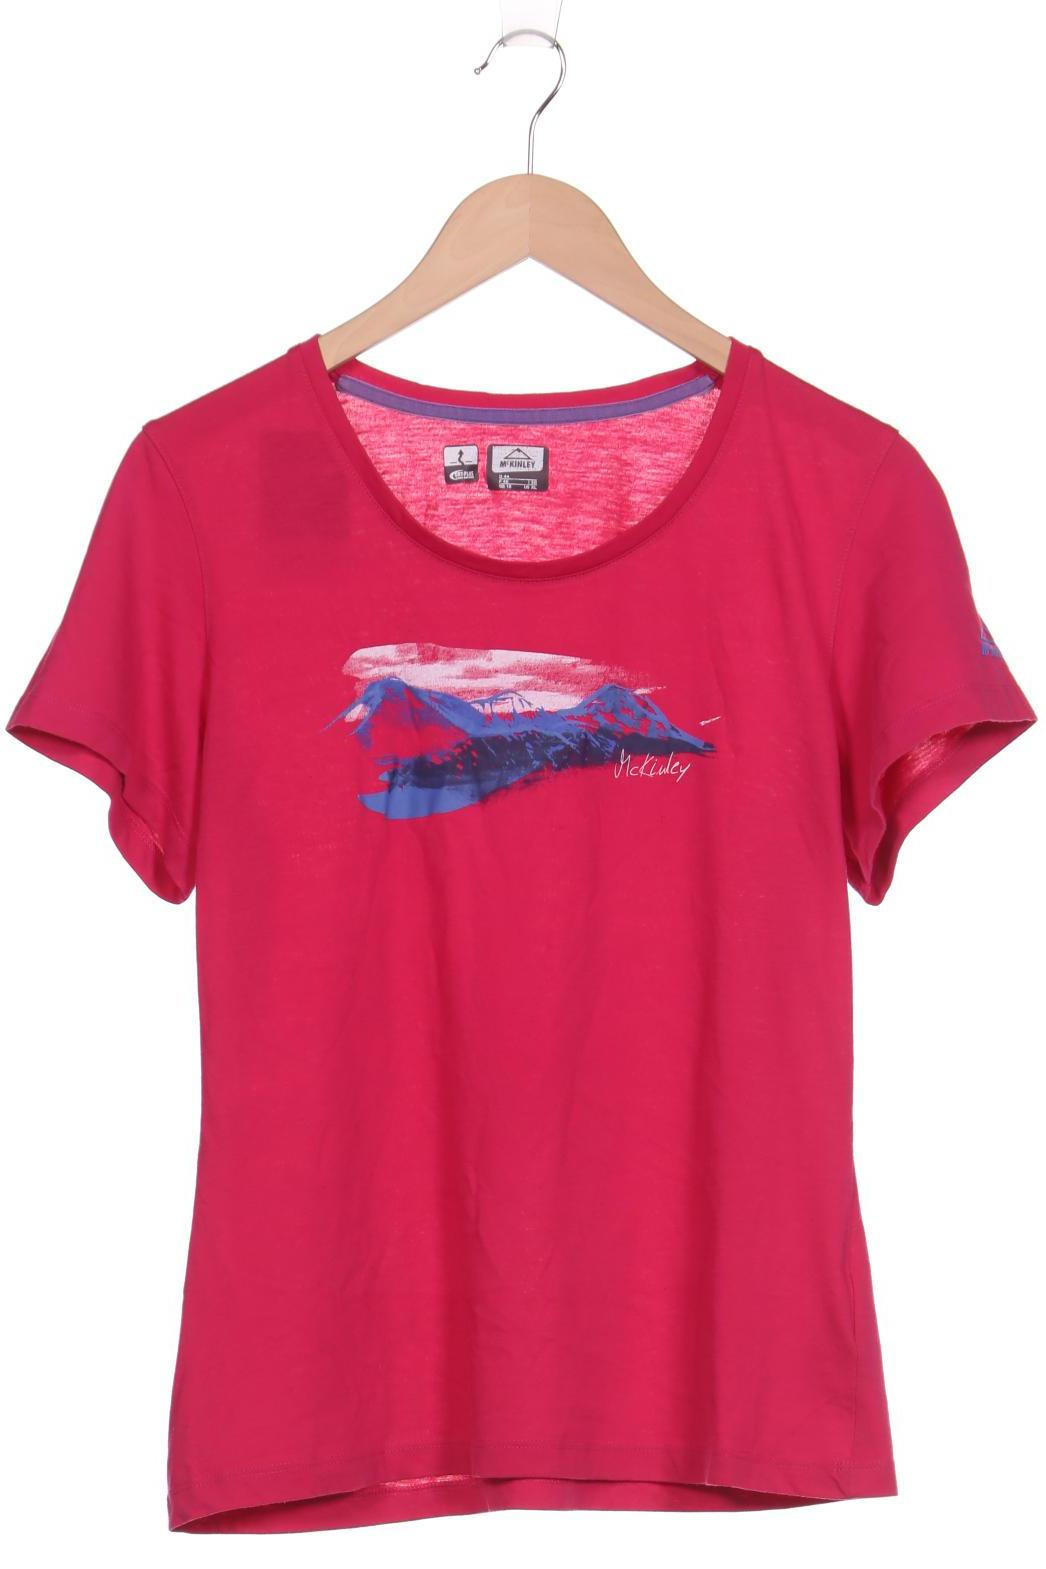 McKINLEY Damen T-Shirt, pink, Gr. 44 von mckinley